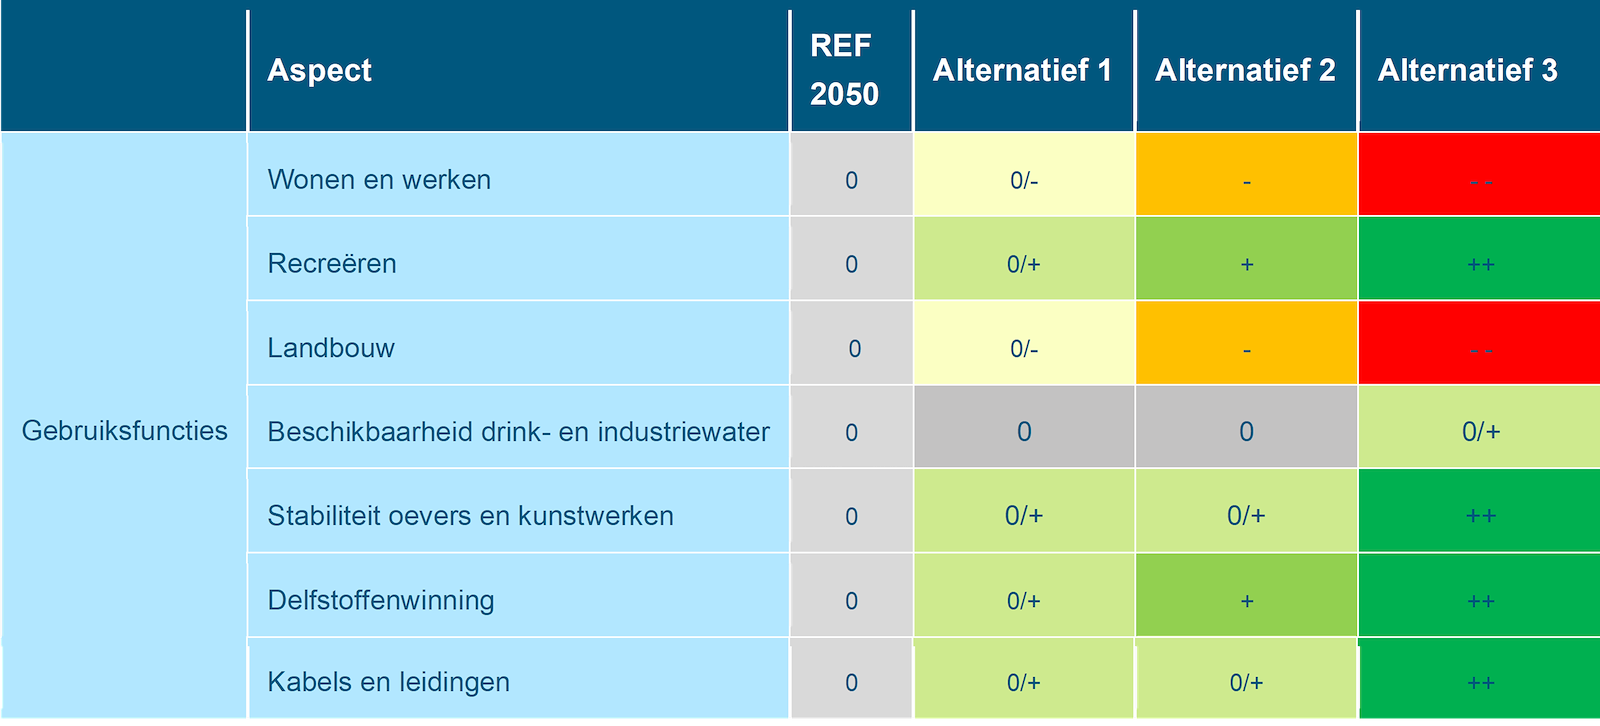 Deze tabel laat de totaalbeoordeling voor de milieueffecten van het beoordelingsaspect gebruiksfuncties rivierengebied zien voor de Maas, voor de referentiesituatie en de drie alternatieven. Deze beoordeling is toegelicht in de tekst voorafgaande aan de tabel.